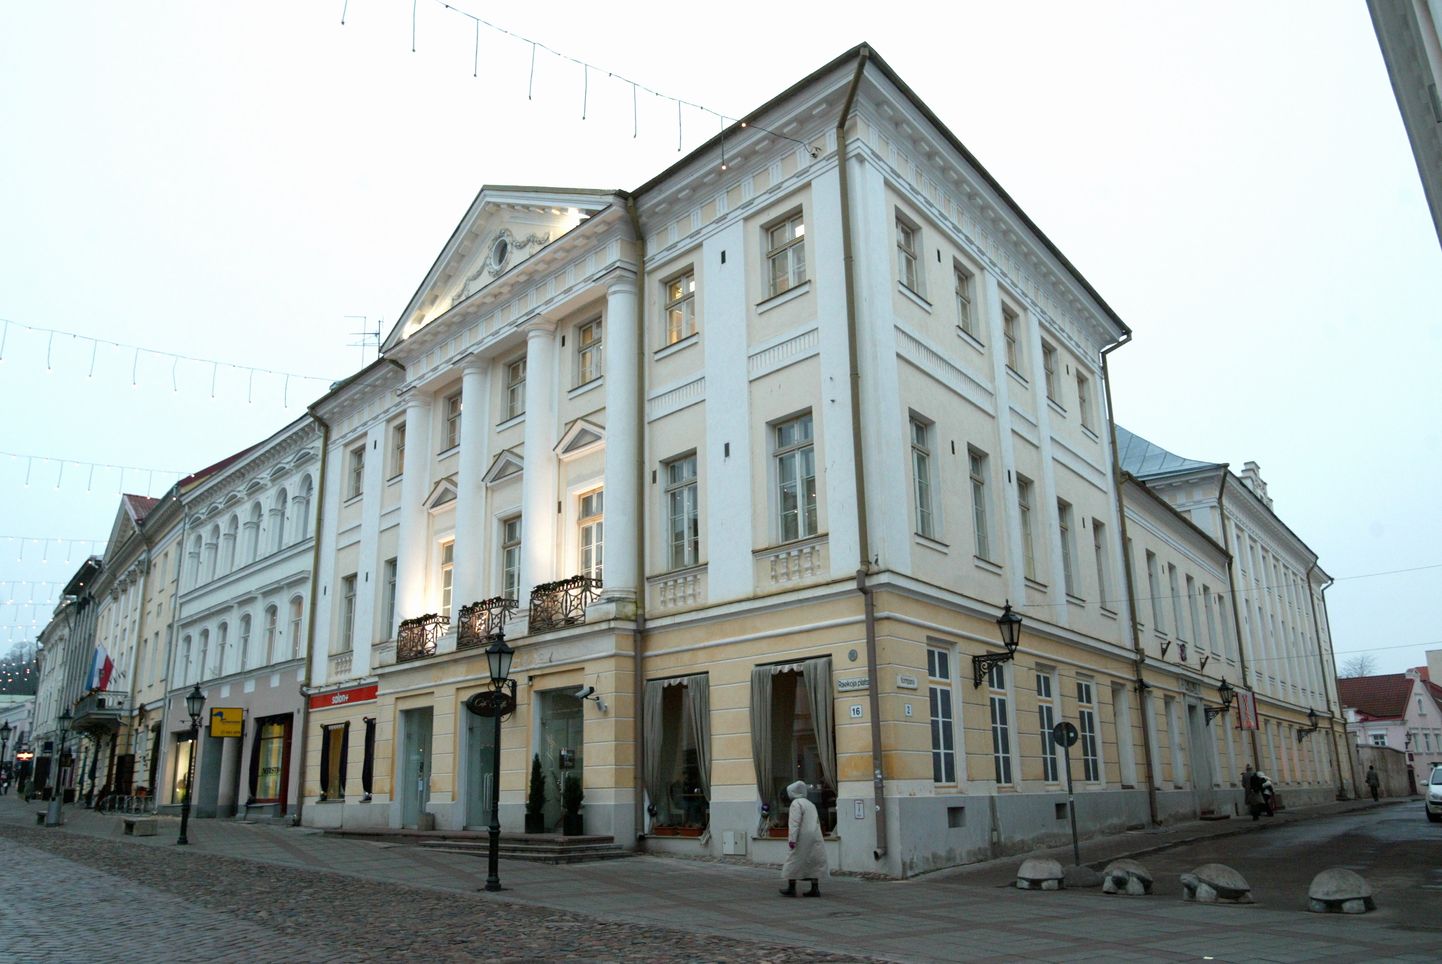 Selles majas tegutses Tartu kultuurihoone. Foto aastast 2007.